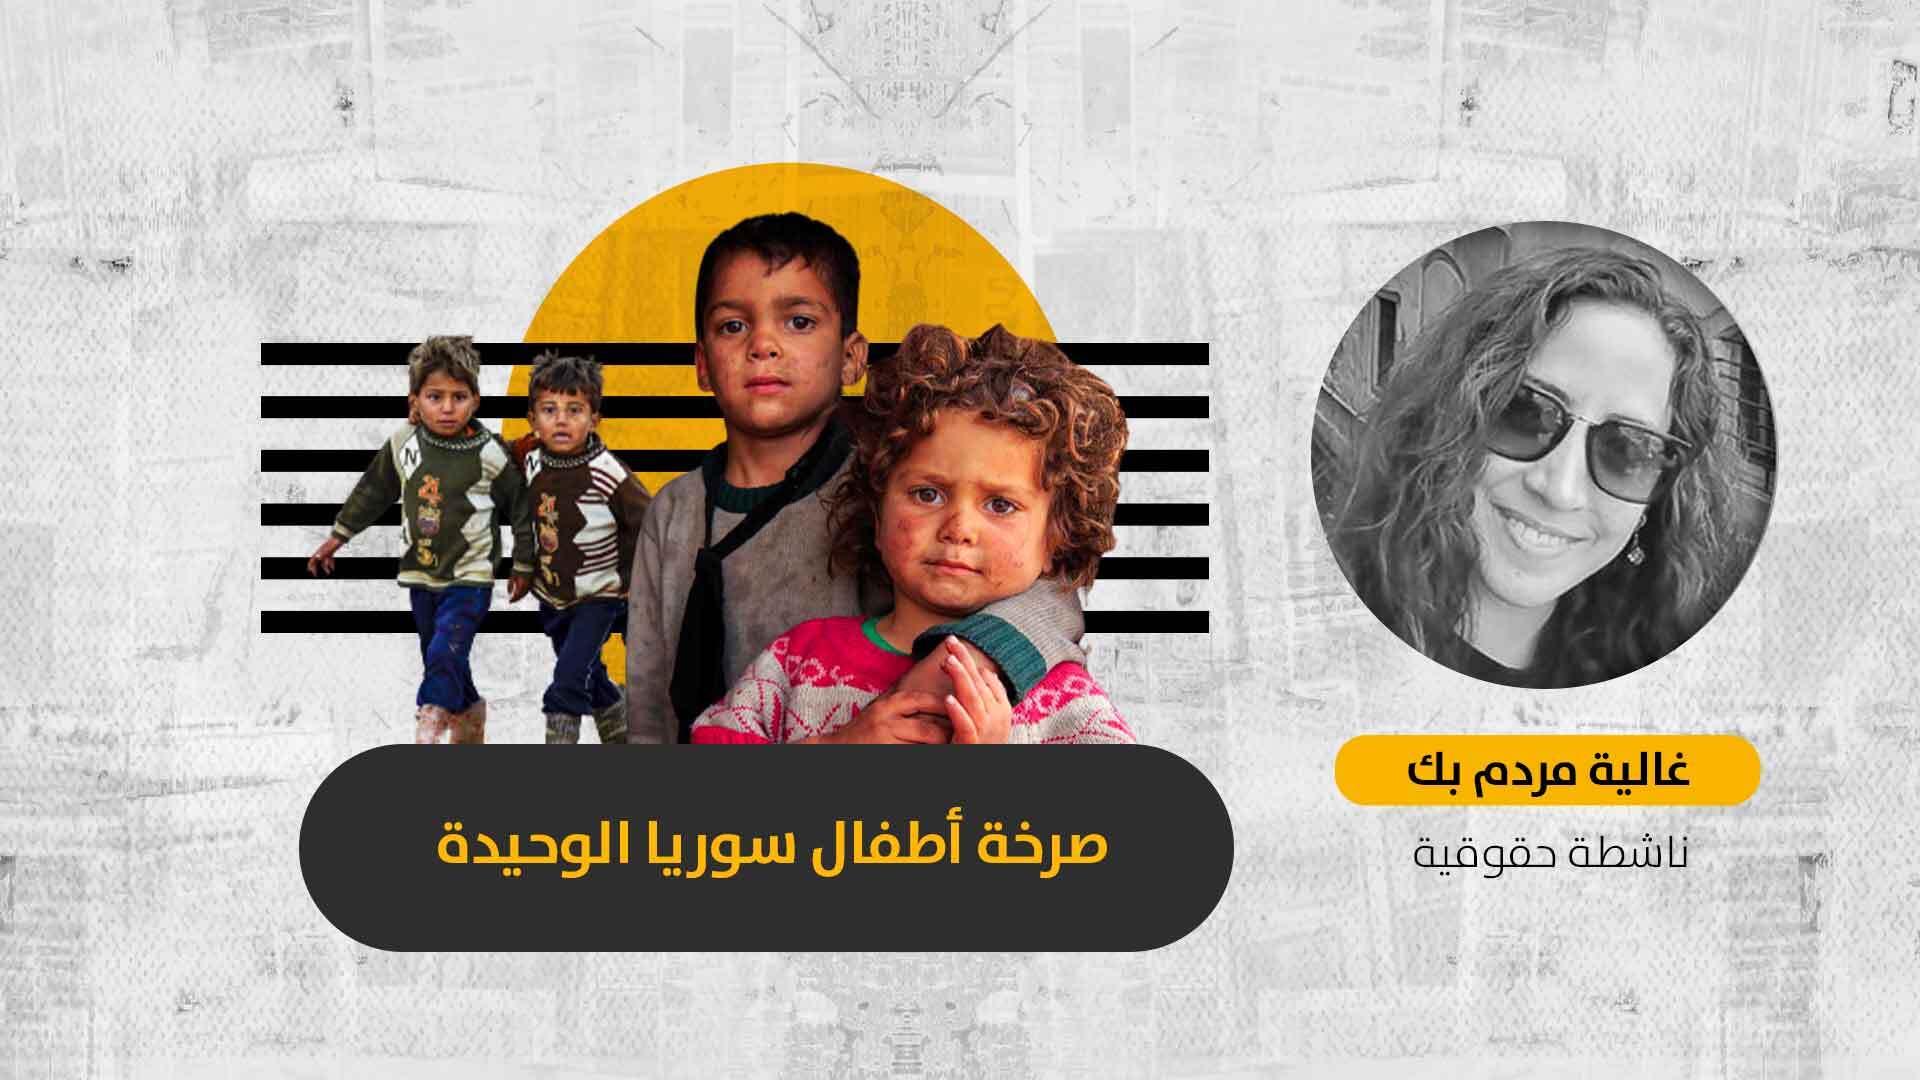 قانون حقوق الطفل الجديد في سوريا.. “ثوب الملك الذي لا يراه إلا الأذكياء”